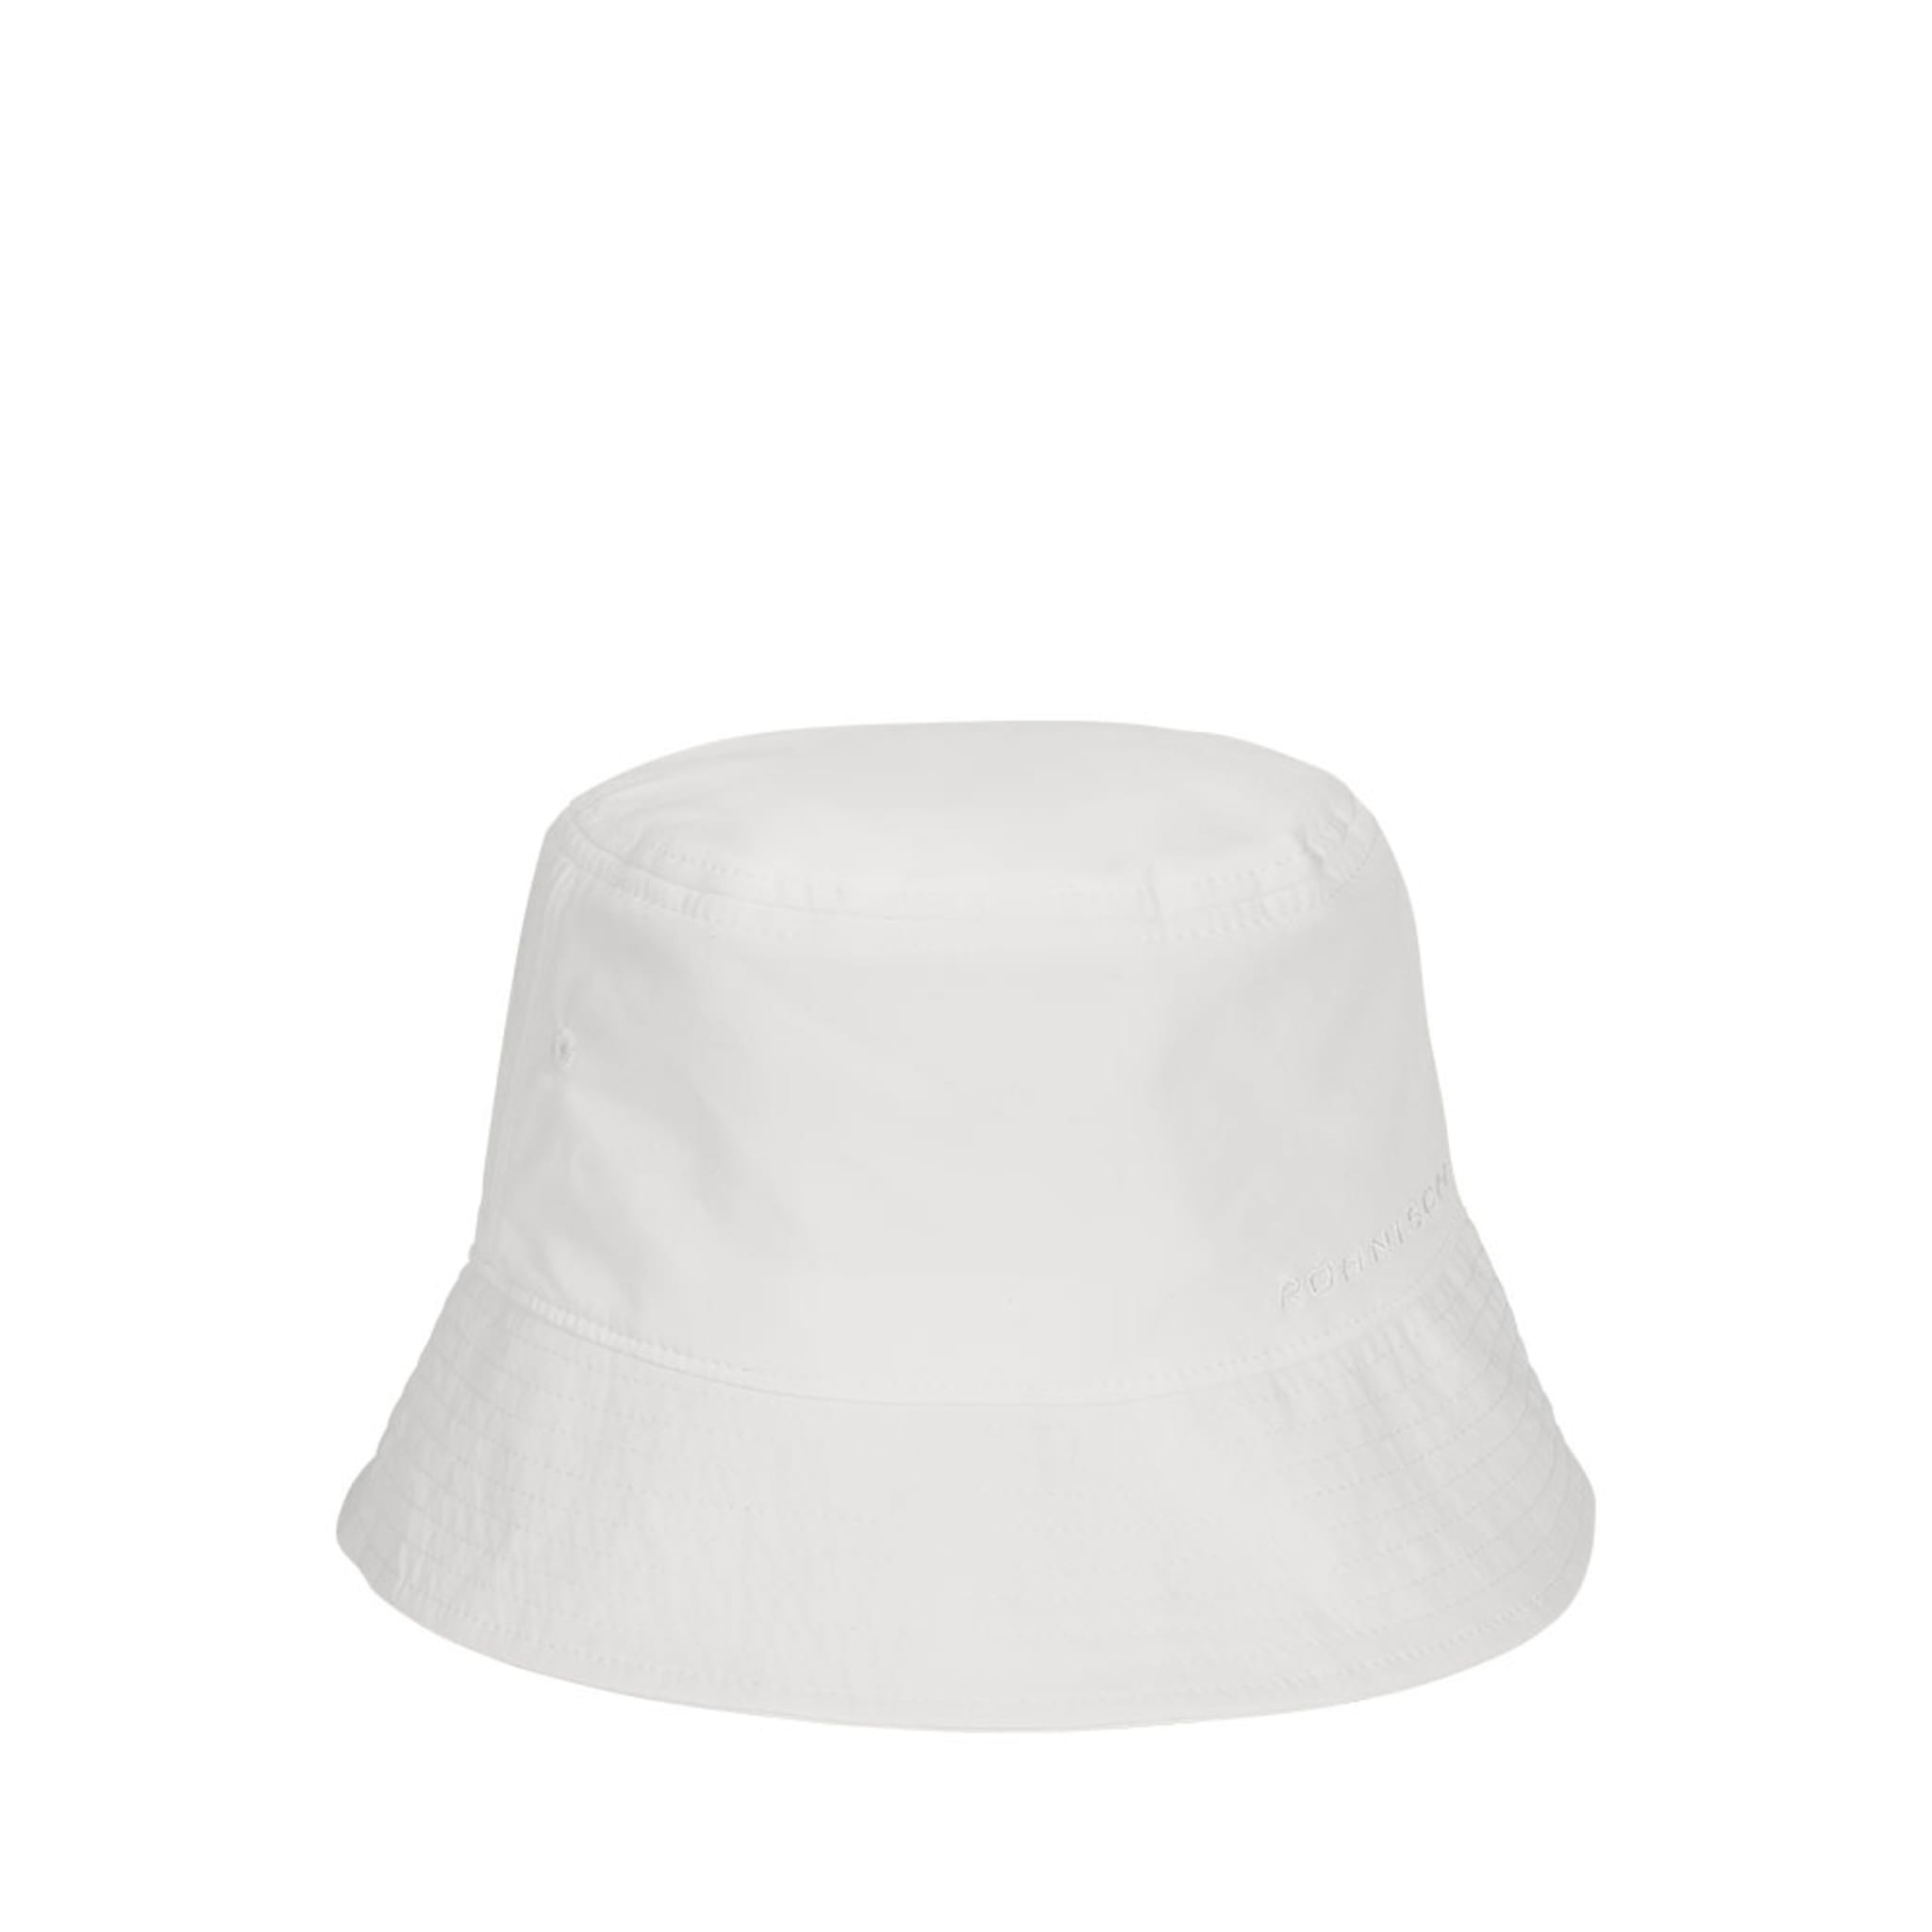 Bucket Hat Cap, White